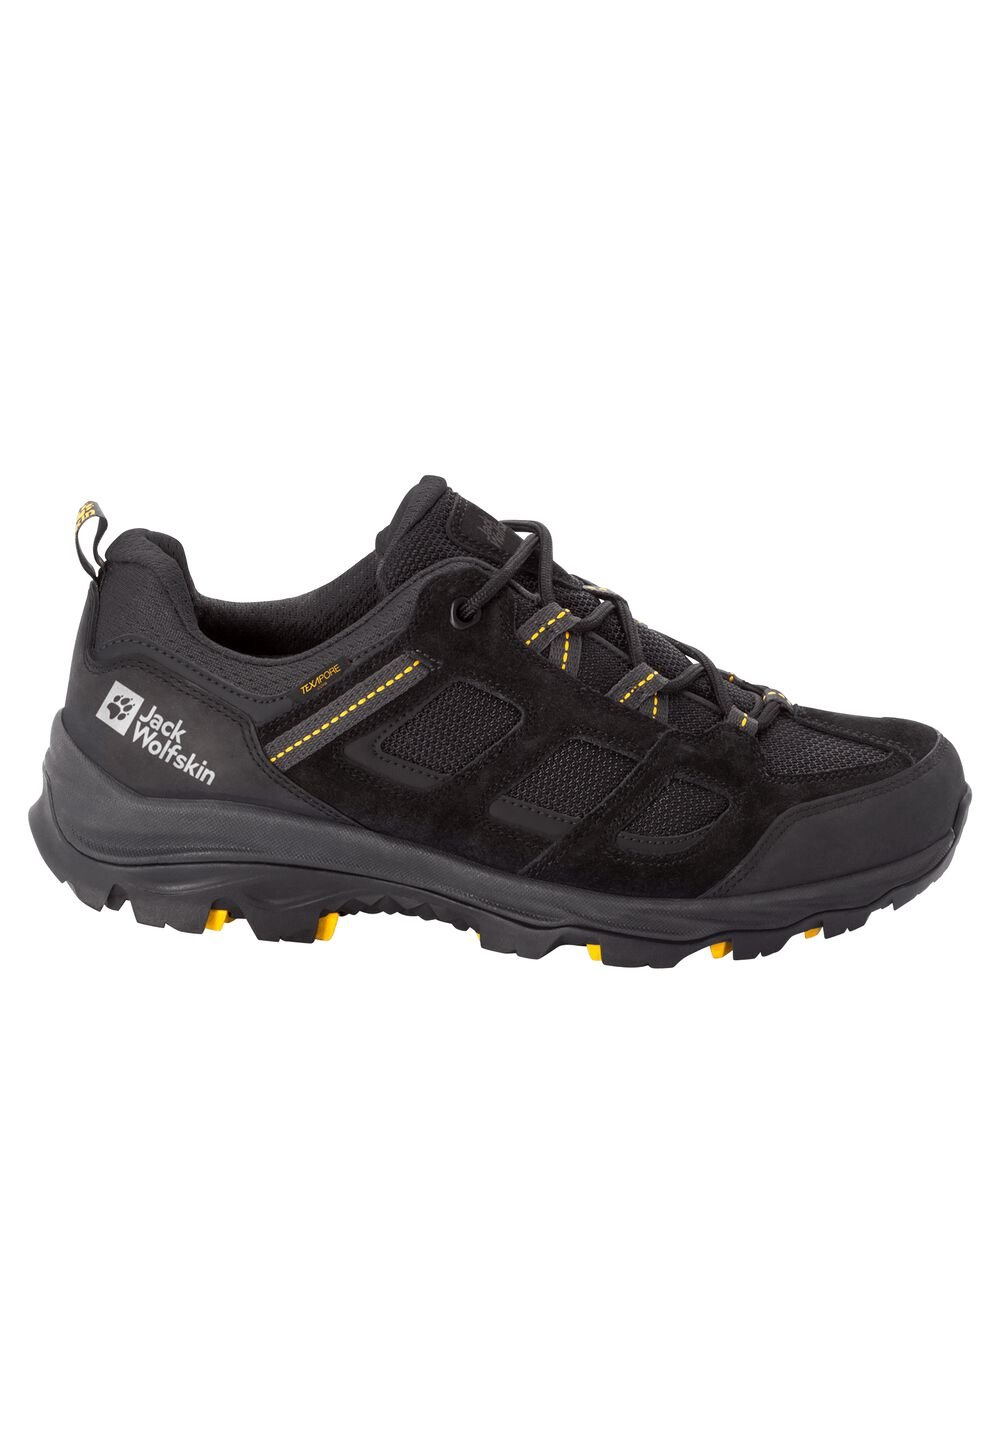 Chaussures de randonnée imperméables hommes Vojo 3 Texapore Low Men 9,5 noir black / burly yellow XT